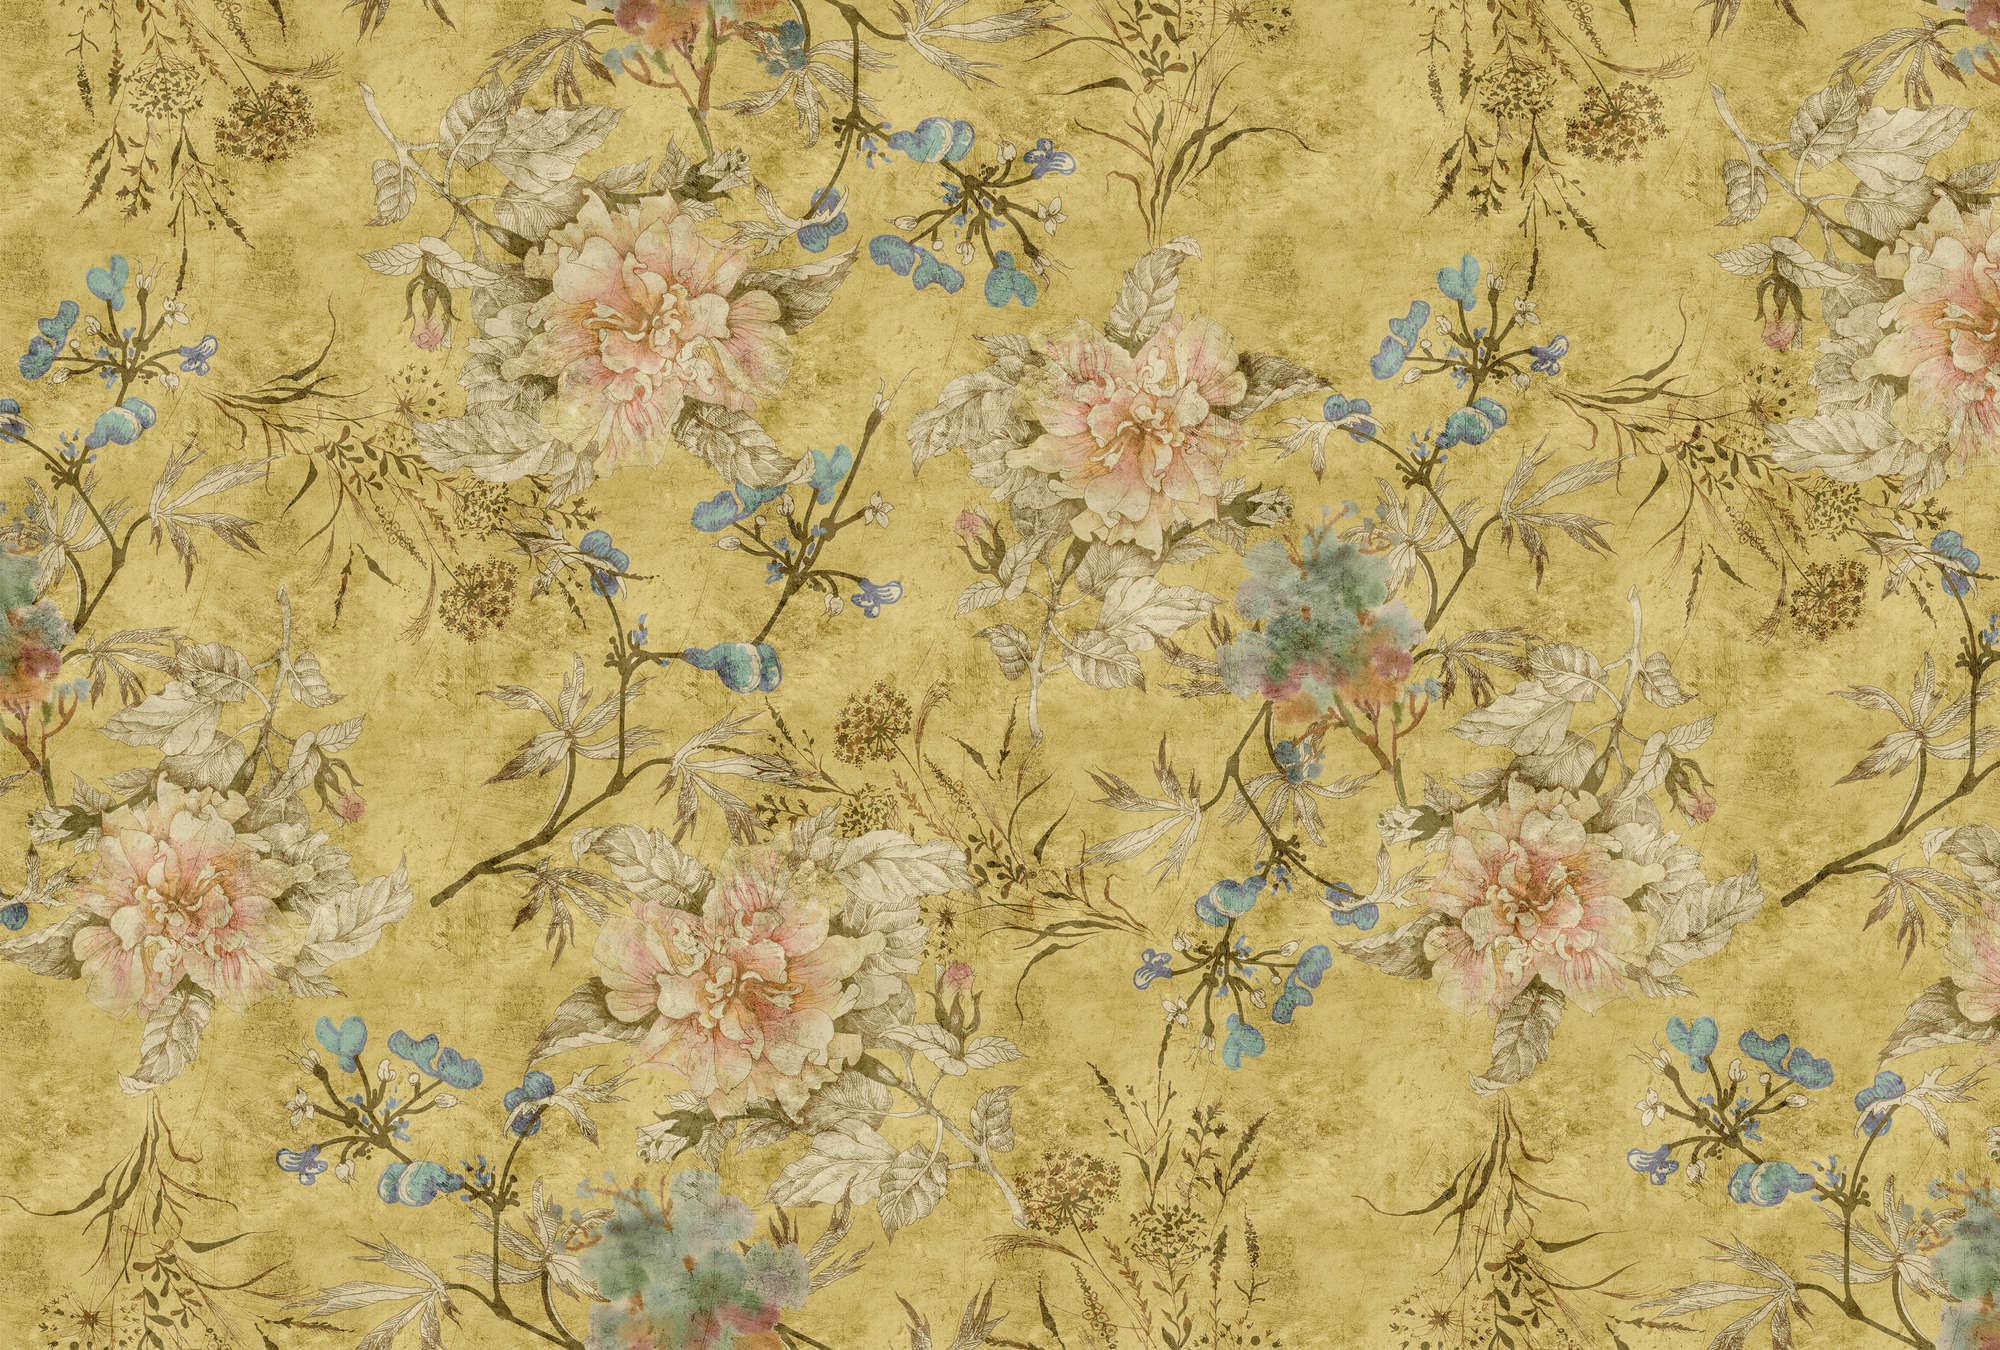             Tenderblossom 2 - Carta da parati floreale dall'aspetto vintage - Texture a graffi - Giallo | Panno liscio perlato
        